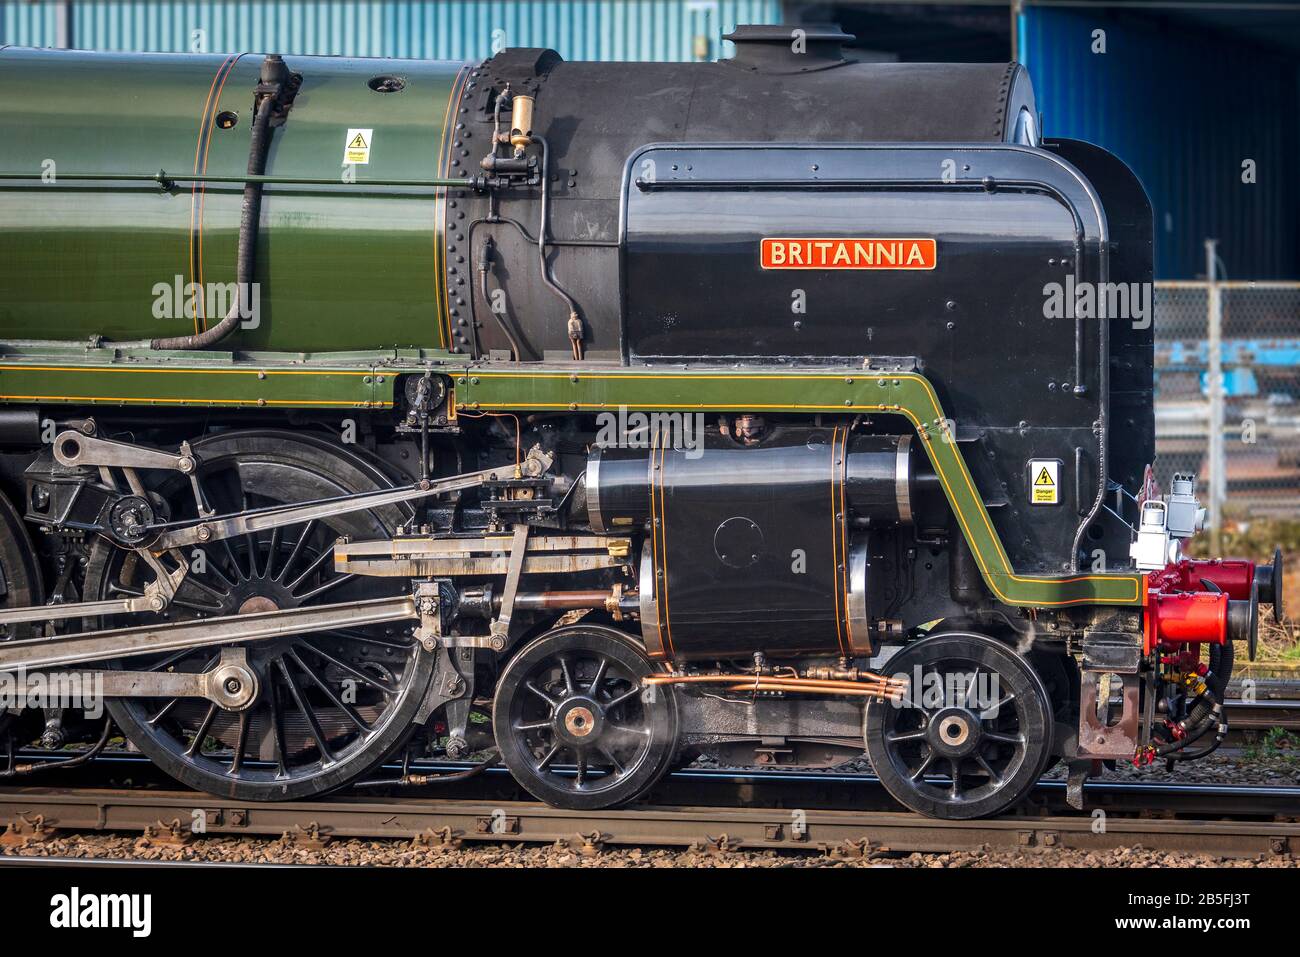 British Railways Standard Class 7, Nummer 70000 Britannia eine erhaltene Dampflok, die sich im Besitz der Royal Scot Locomotive und General Trust befindet. Stockfoto